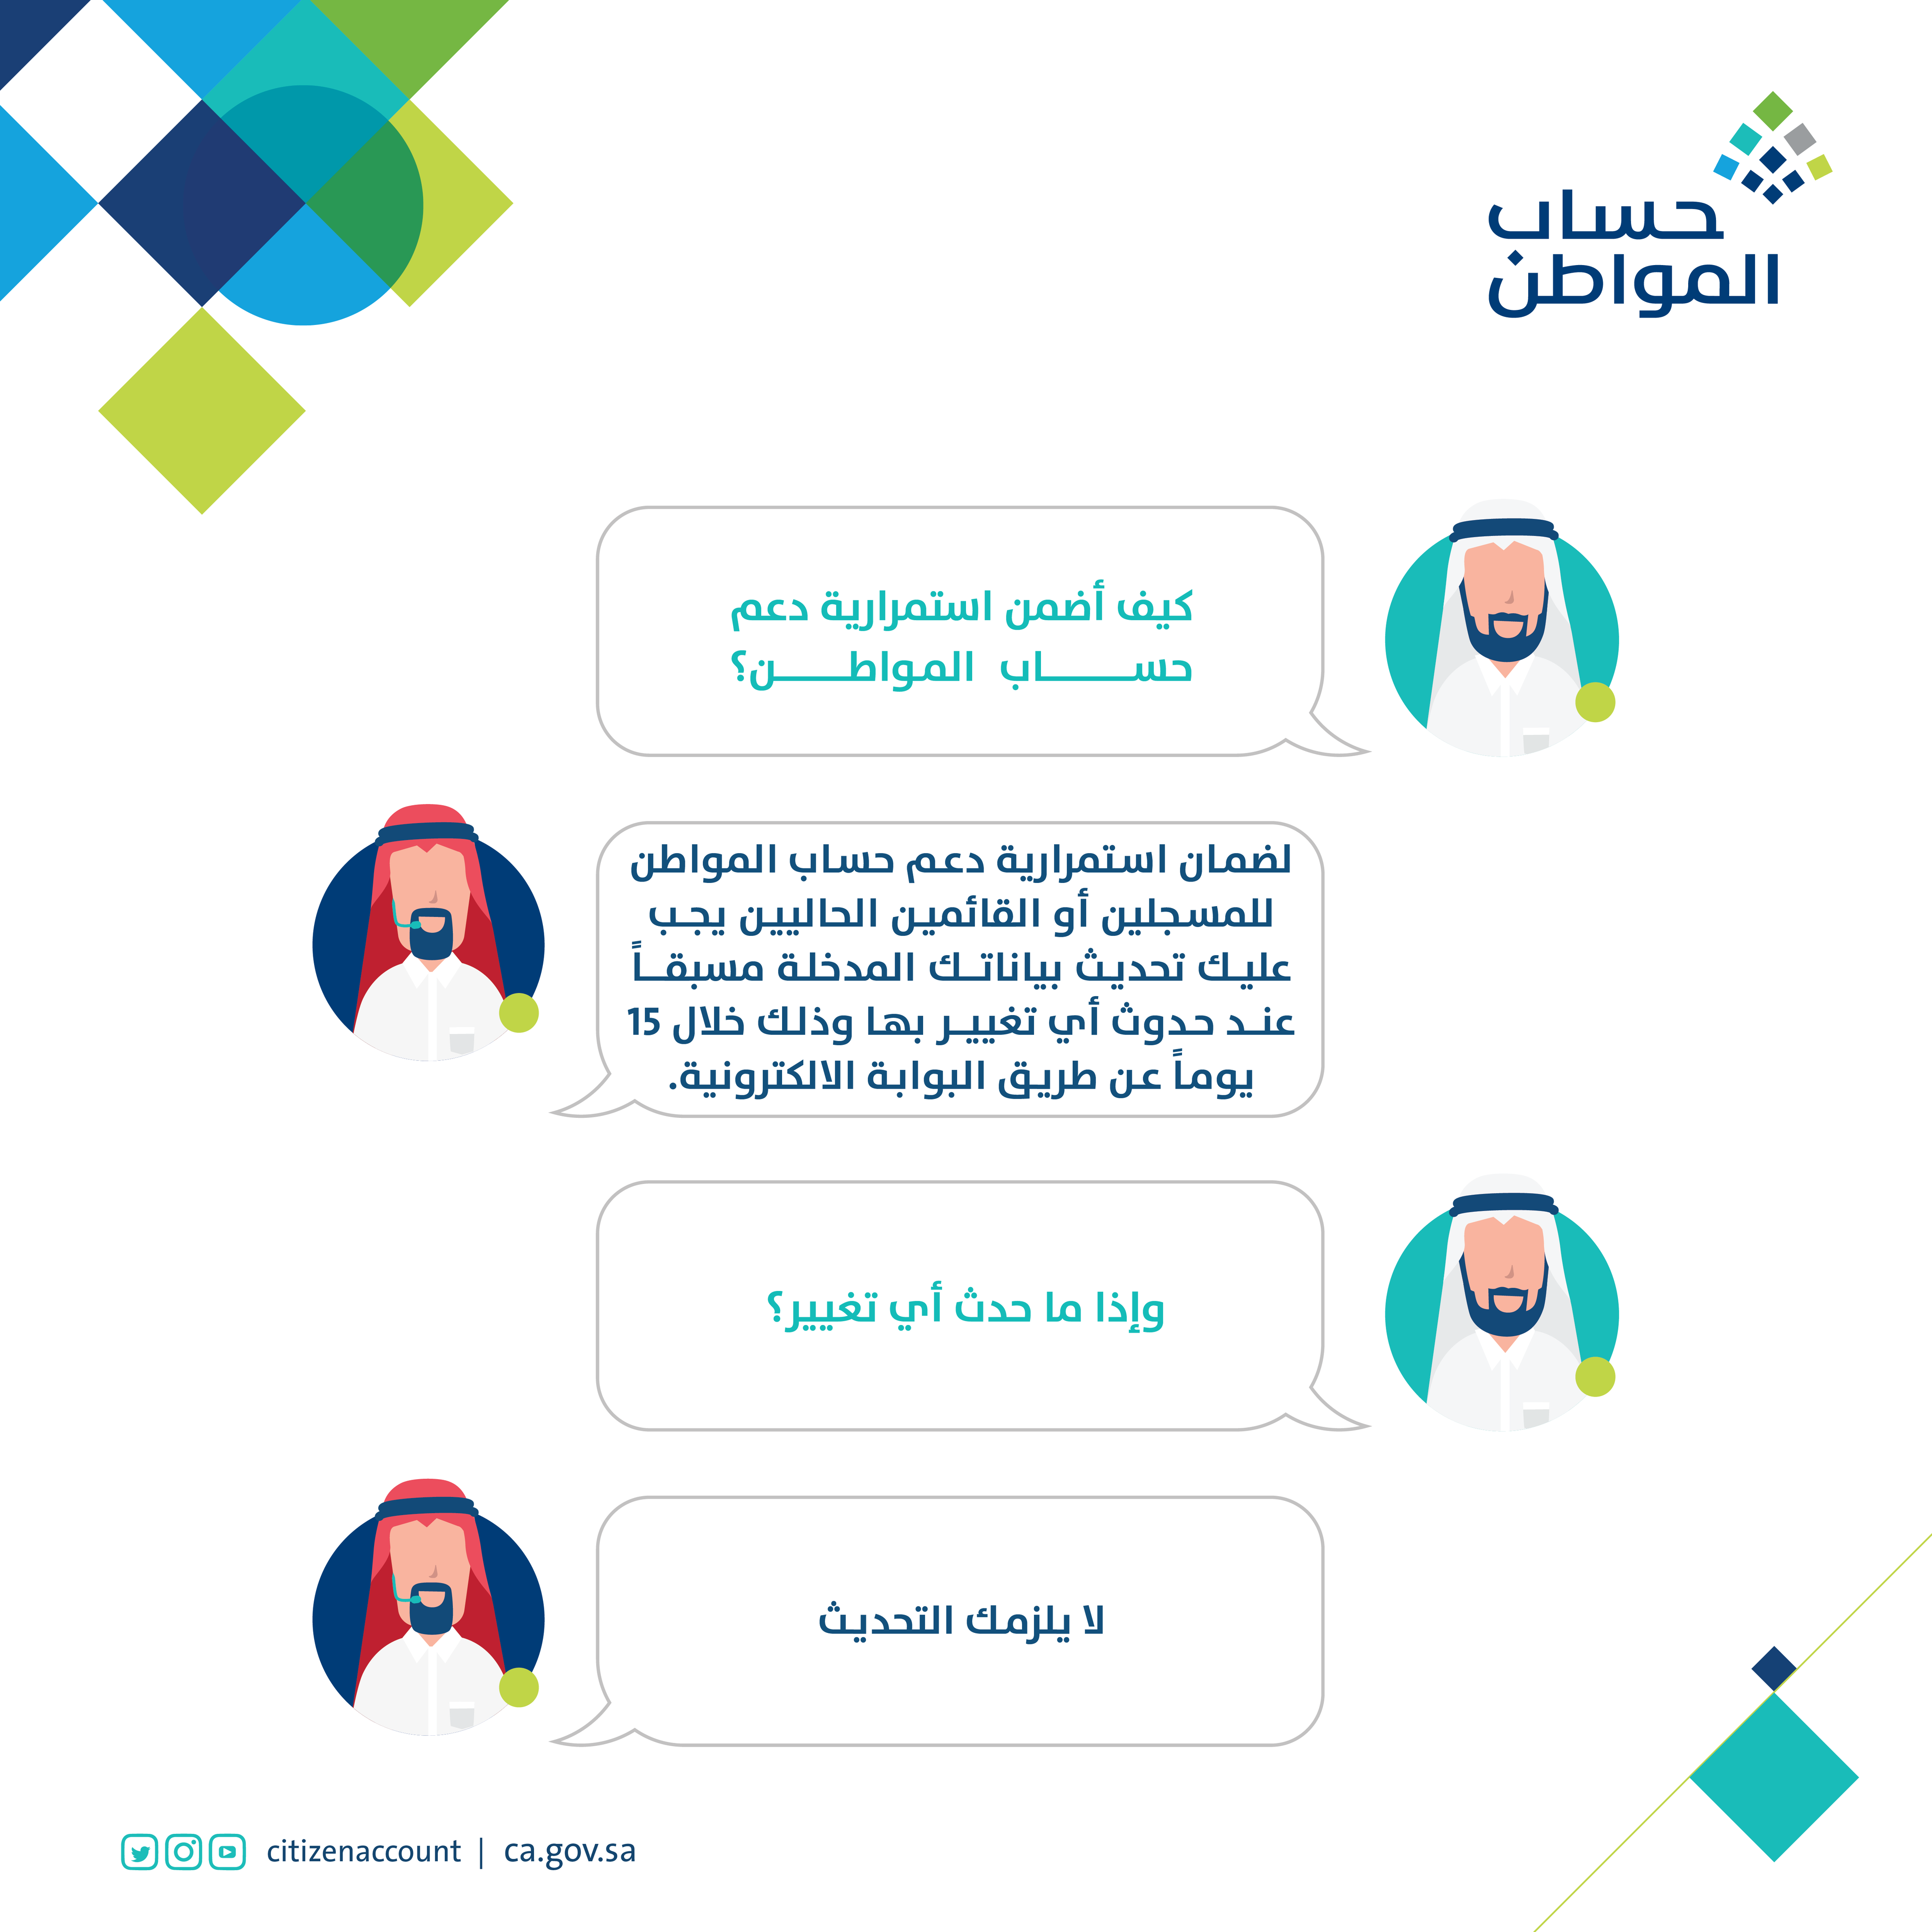 الاستعلام عن قيمة الدعم المخصص من حسابة حساب المواطن والتعرف على طريقة تحديث البيانات 1 - مدونة التقنية العربية